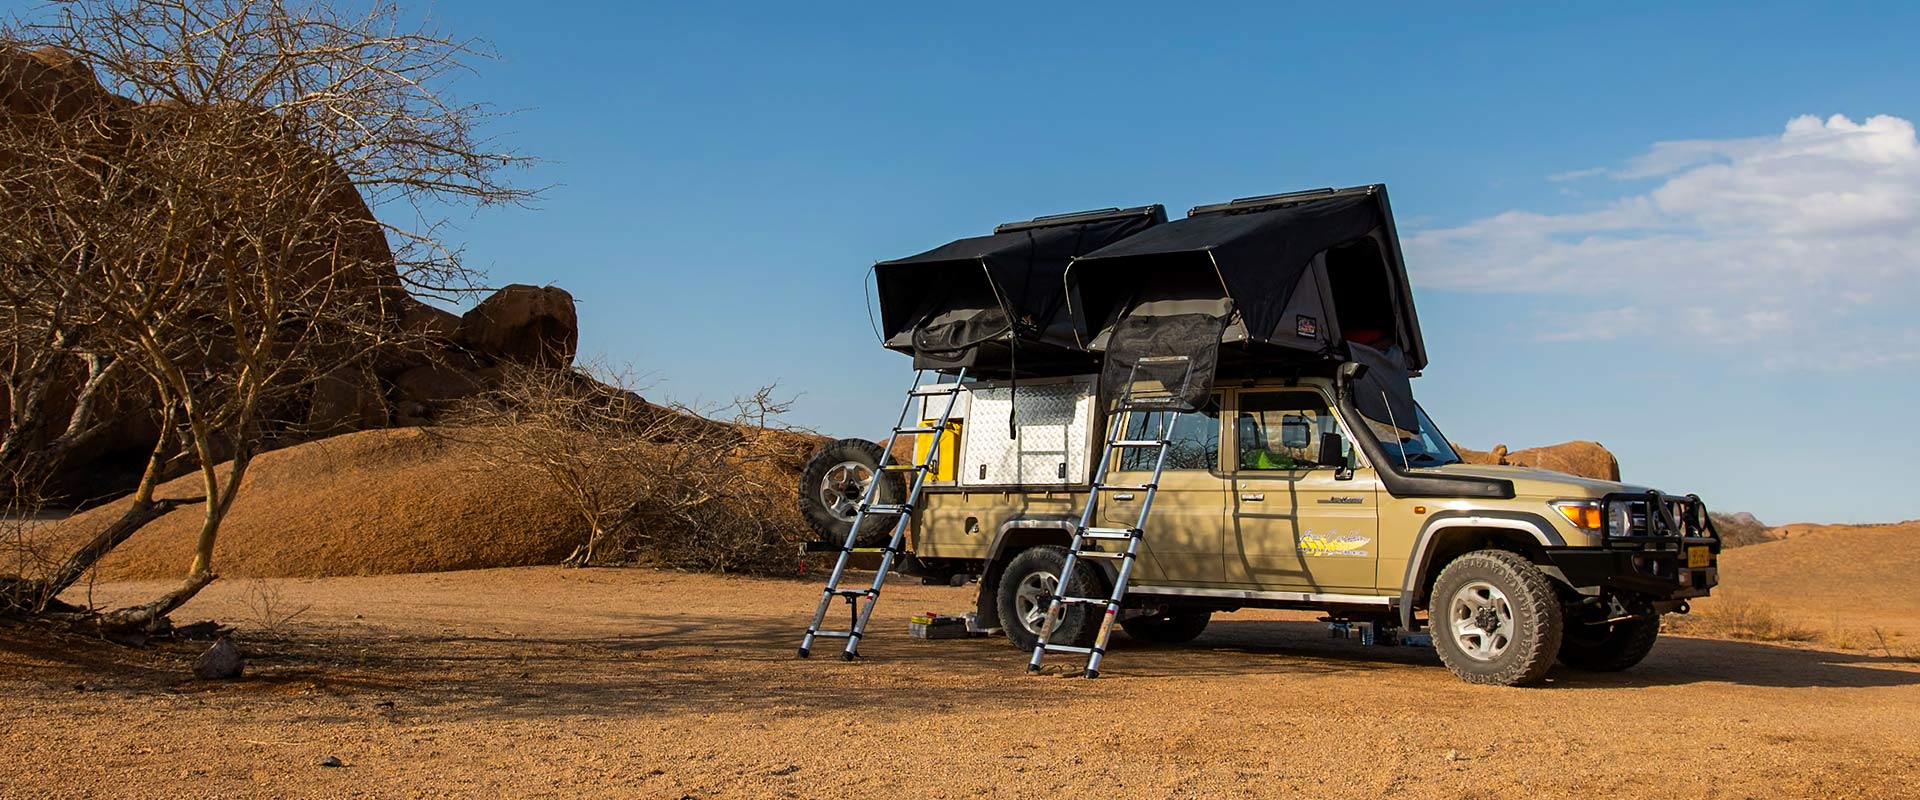 Asco-4x4-Mietwagen-Namibia-Camping-Ausrüstung